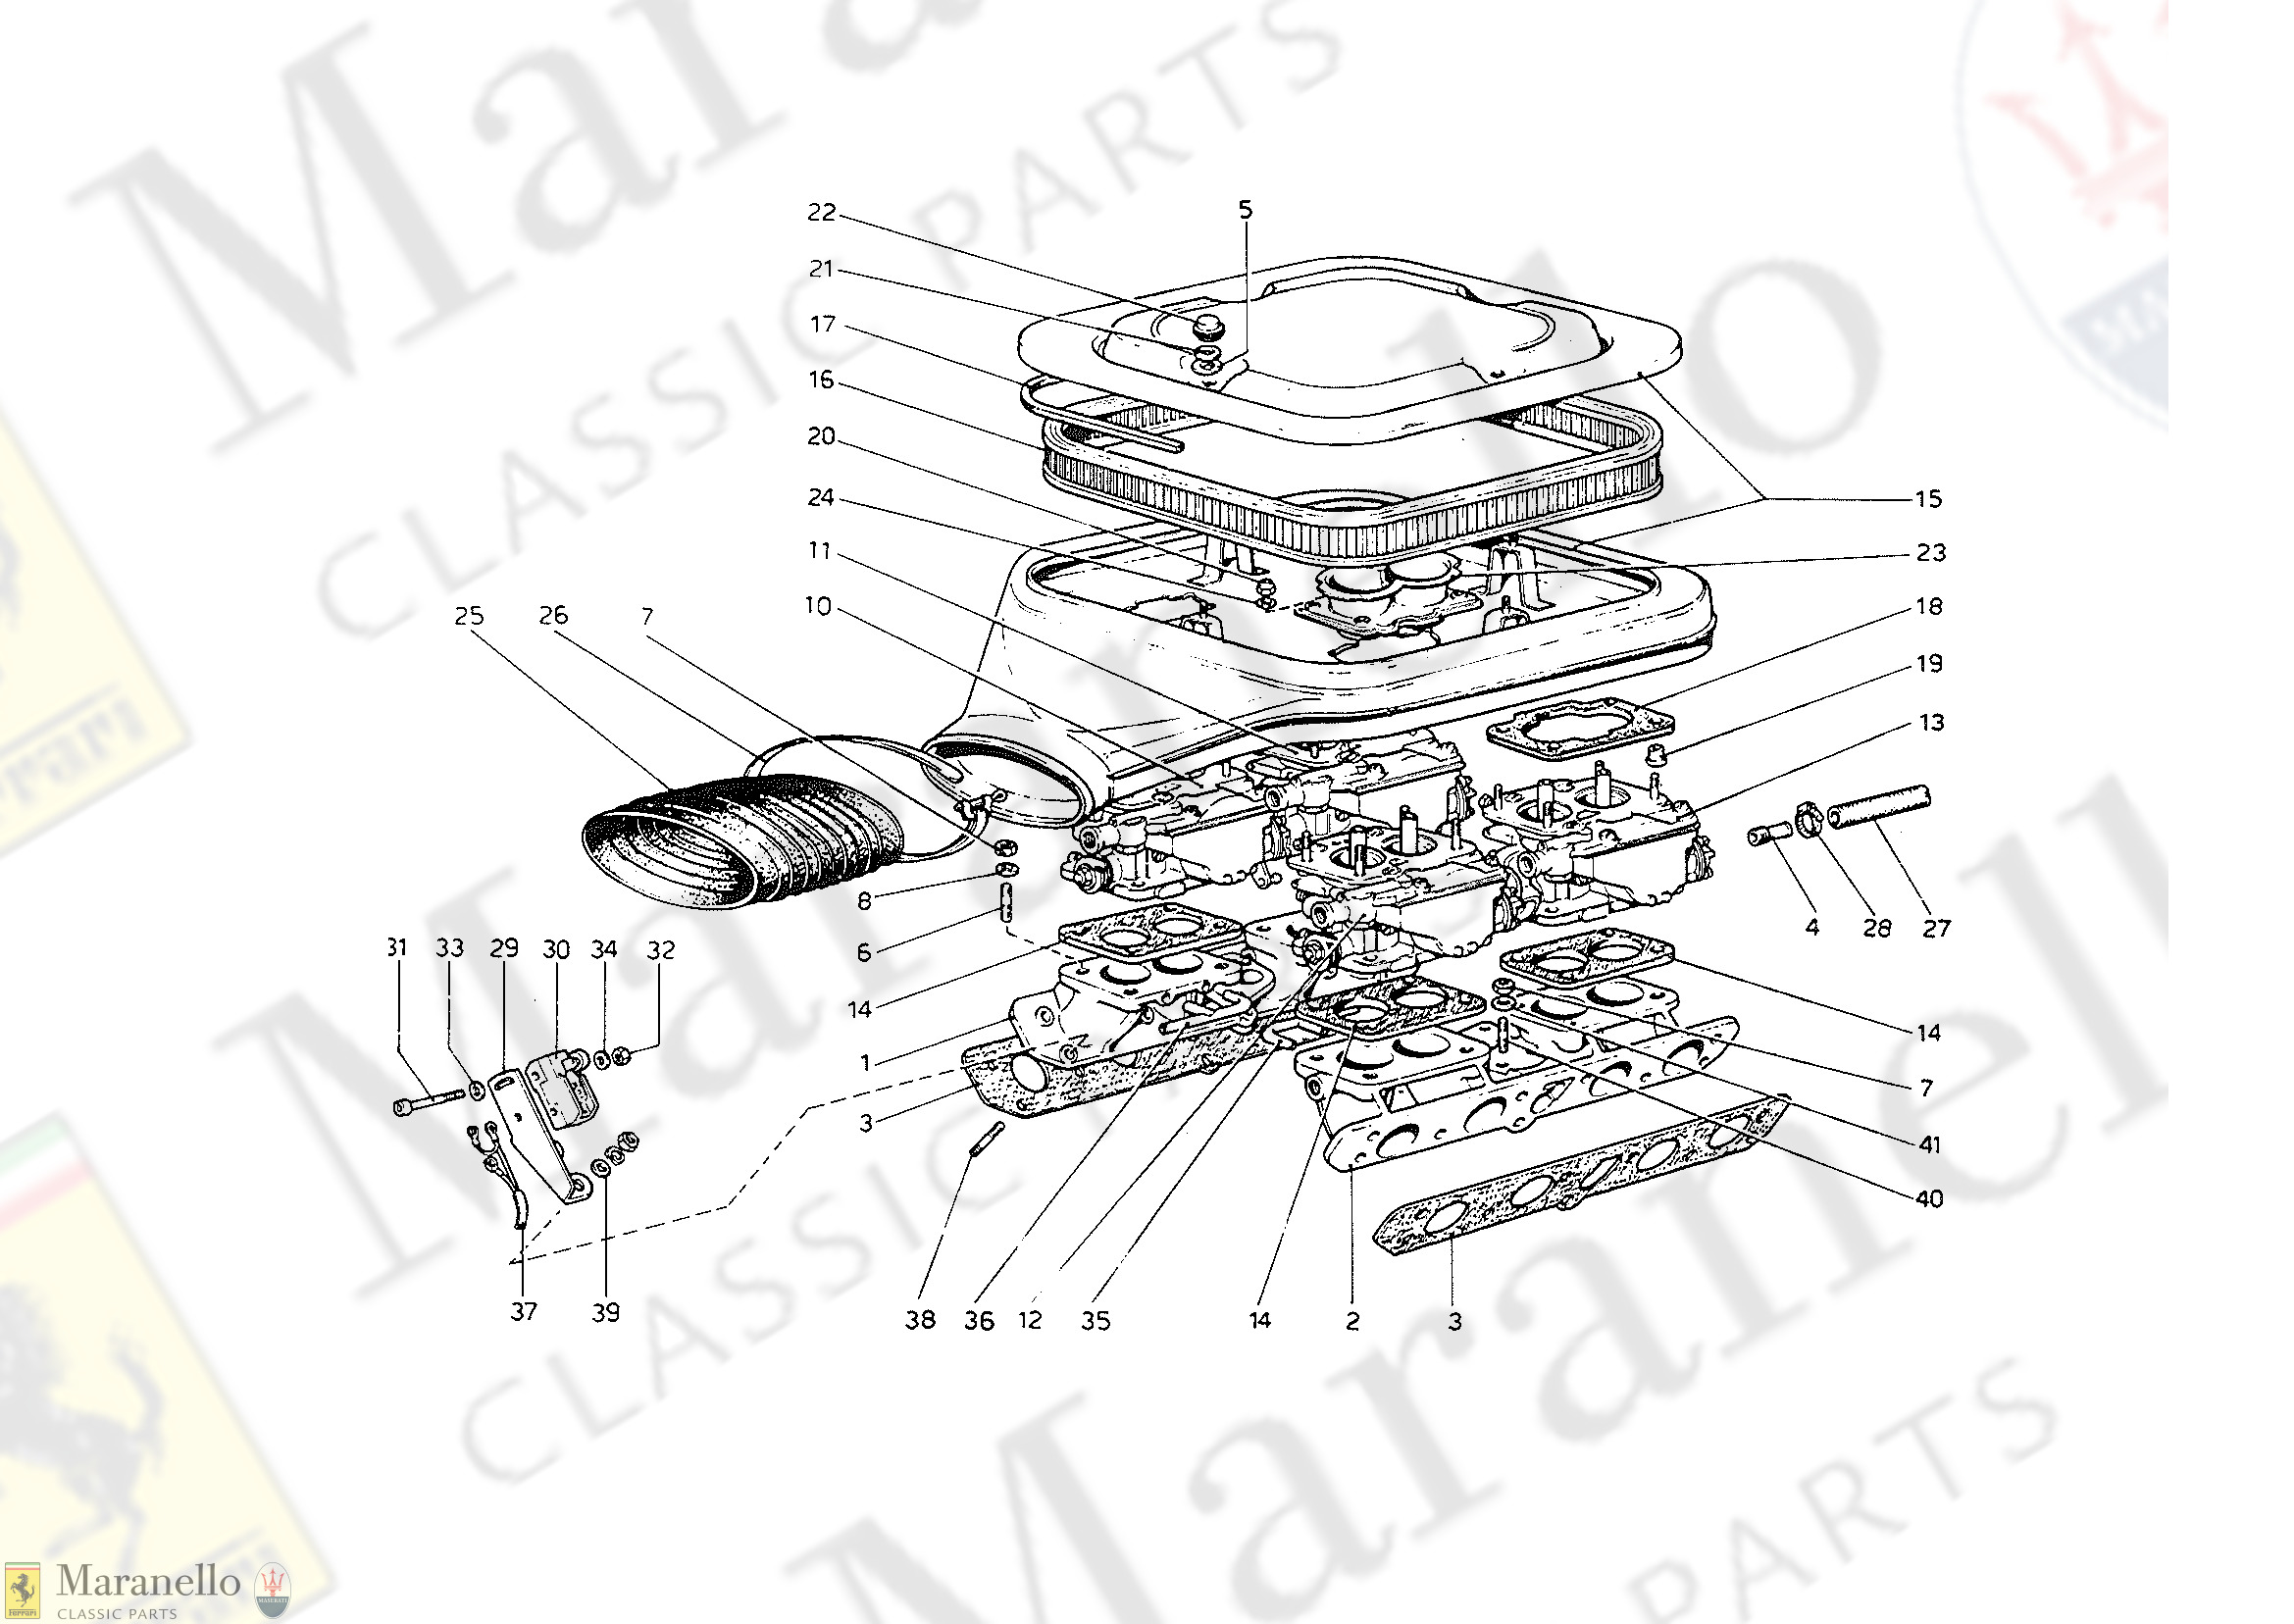 014 - Carburettors & Air Filter